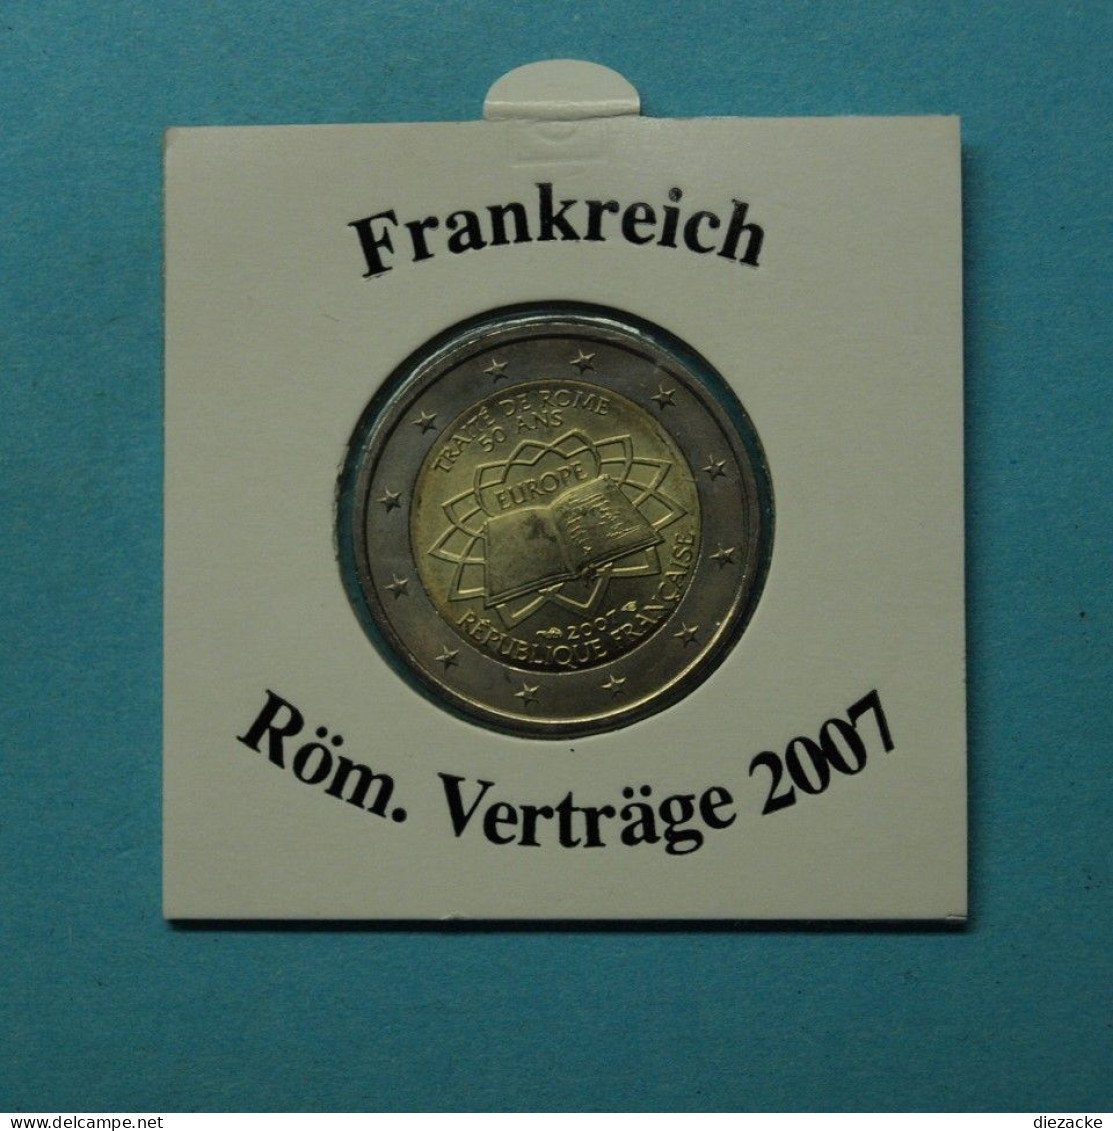 Frankreich 2007 2 Euro Römische Verträge ST (M5346 - Gedenkmünzen